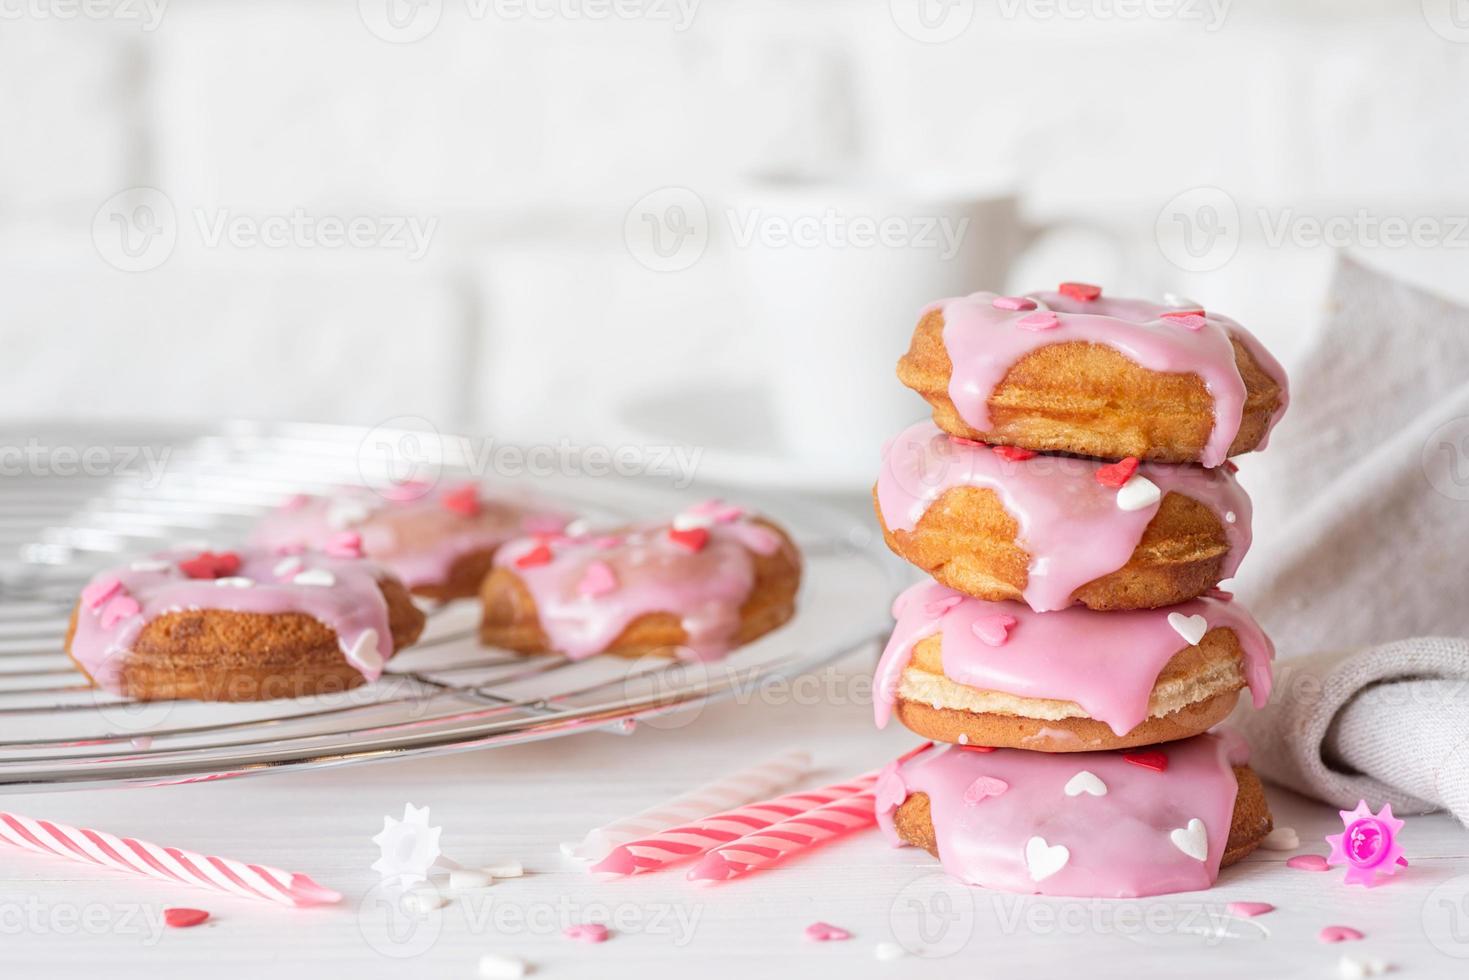 Donut en forma de corazón con glaseado de fresa - concepto del día de San Valentín foto